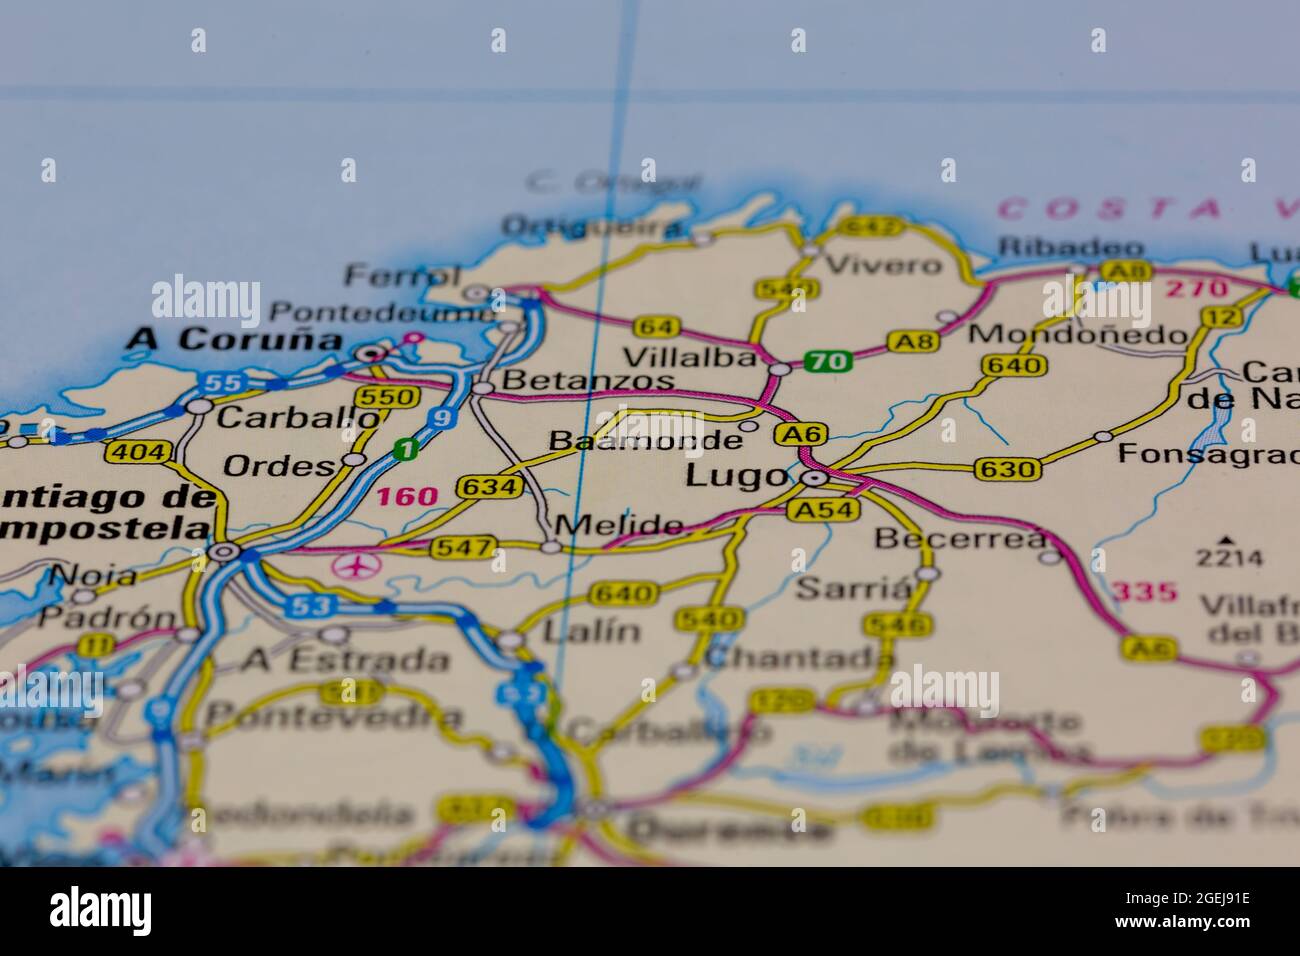 Baamonde España aparece en un mapa de carreteras o en un mapa geográfico Foto de stock